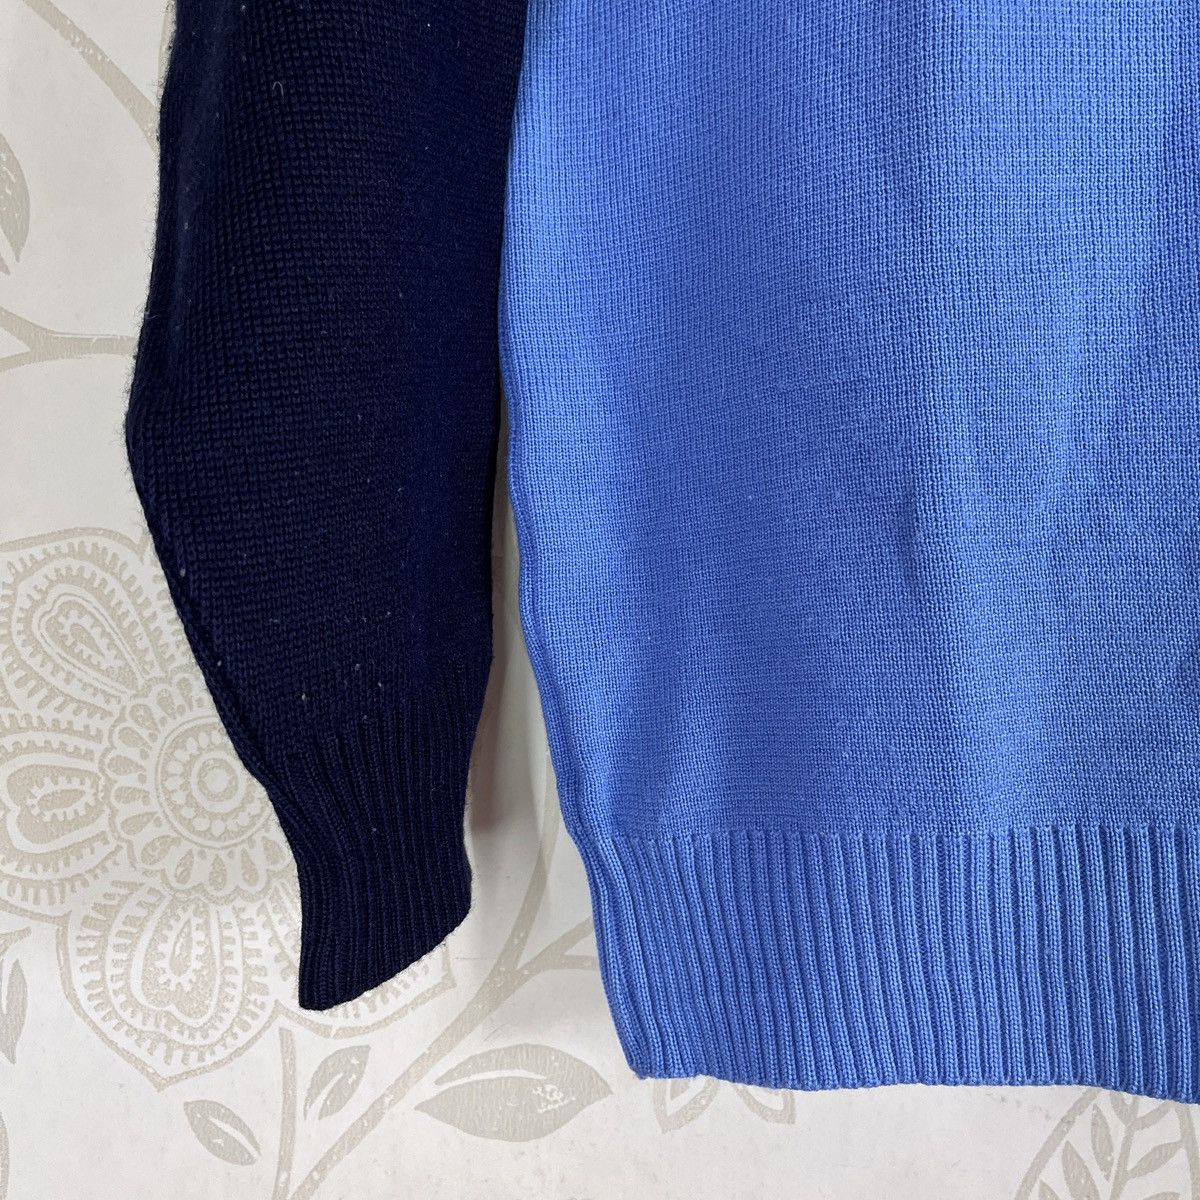 Japan Blue - Vintage Blue Sweater Knitwear Japan - 9